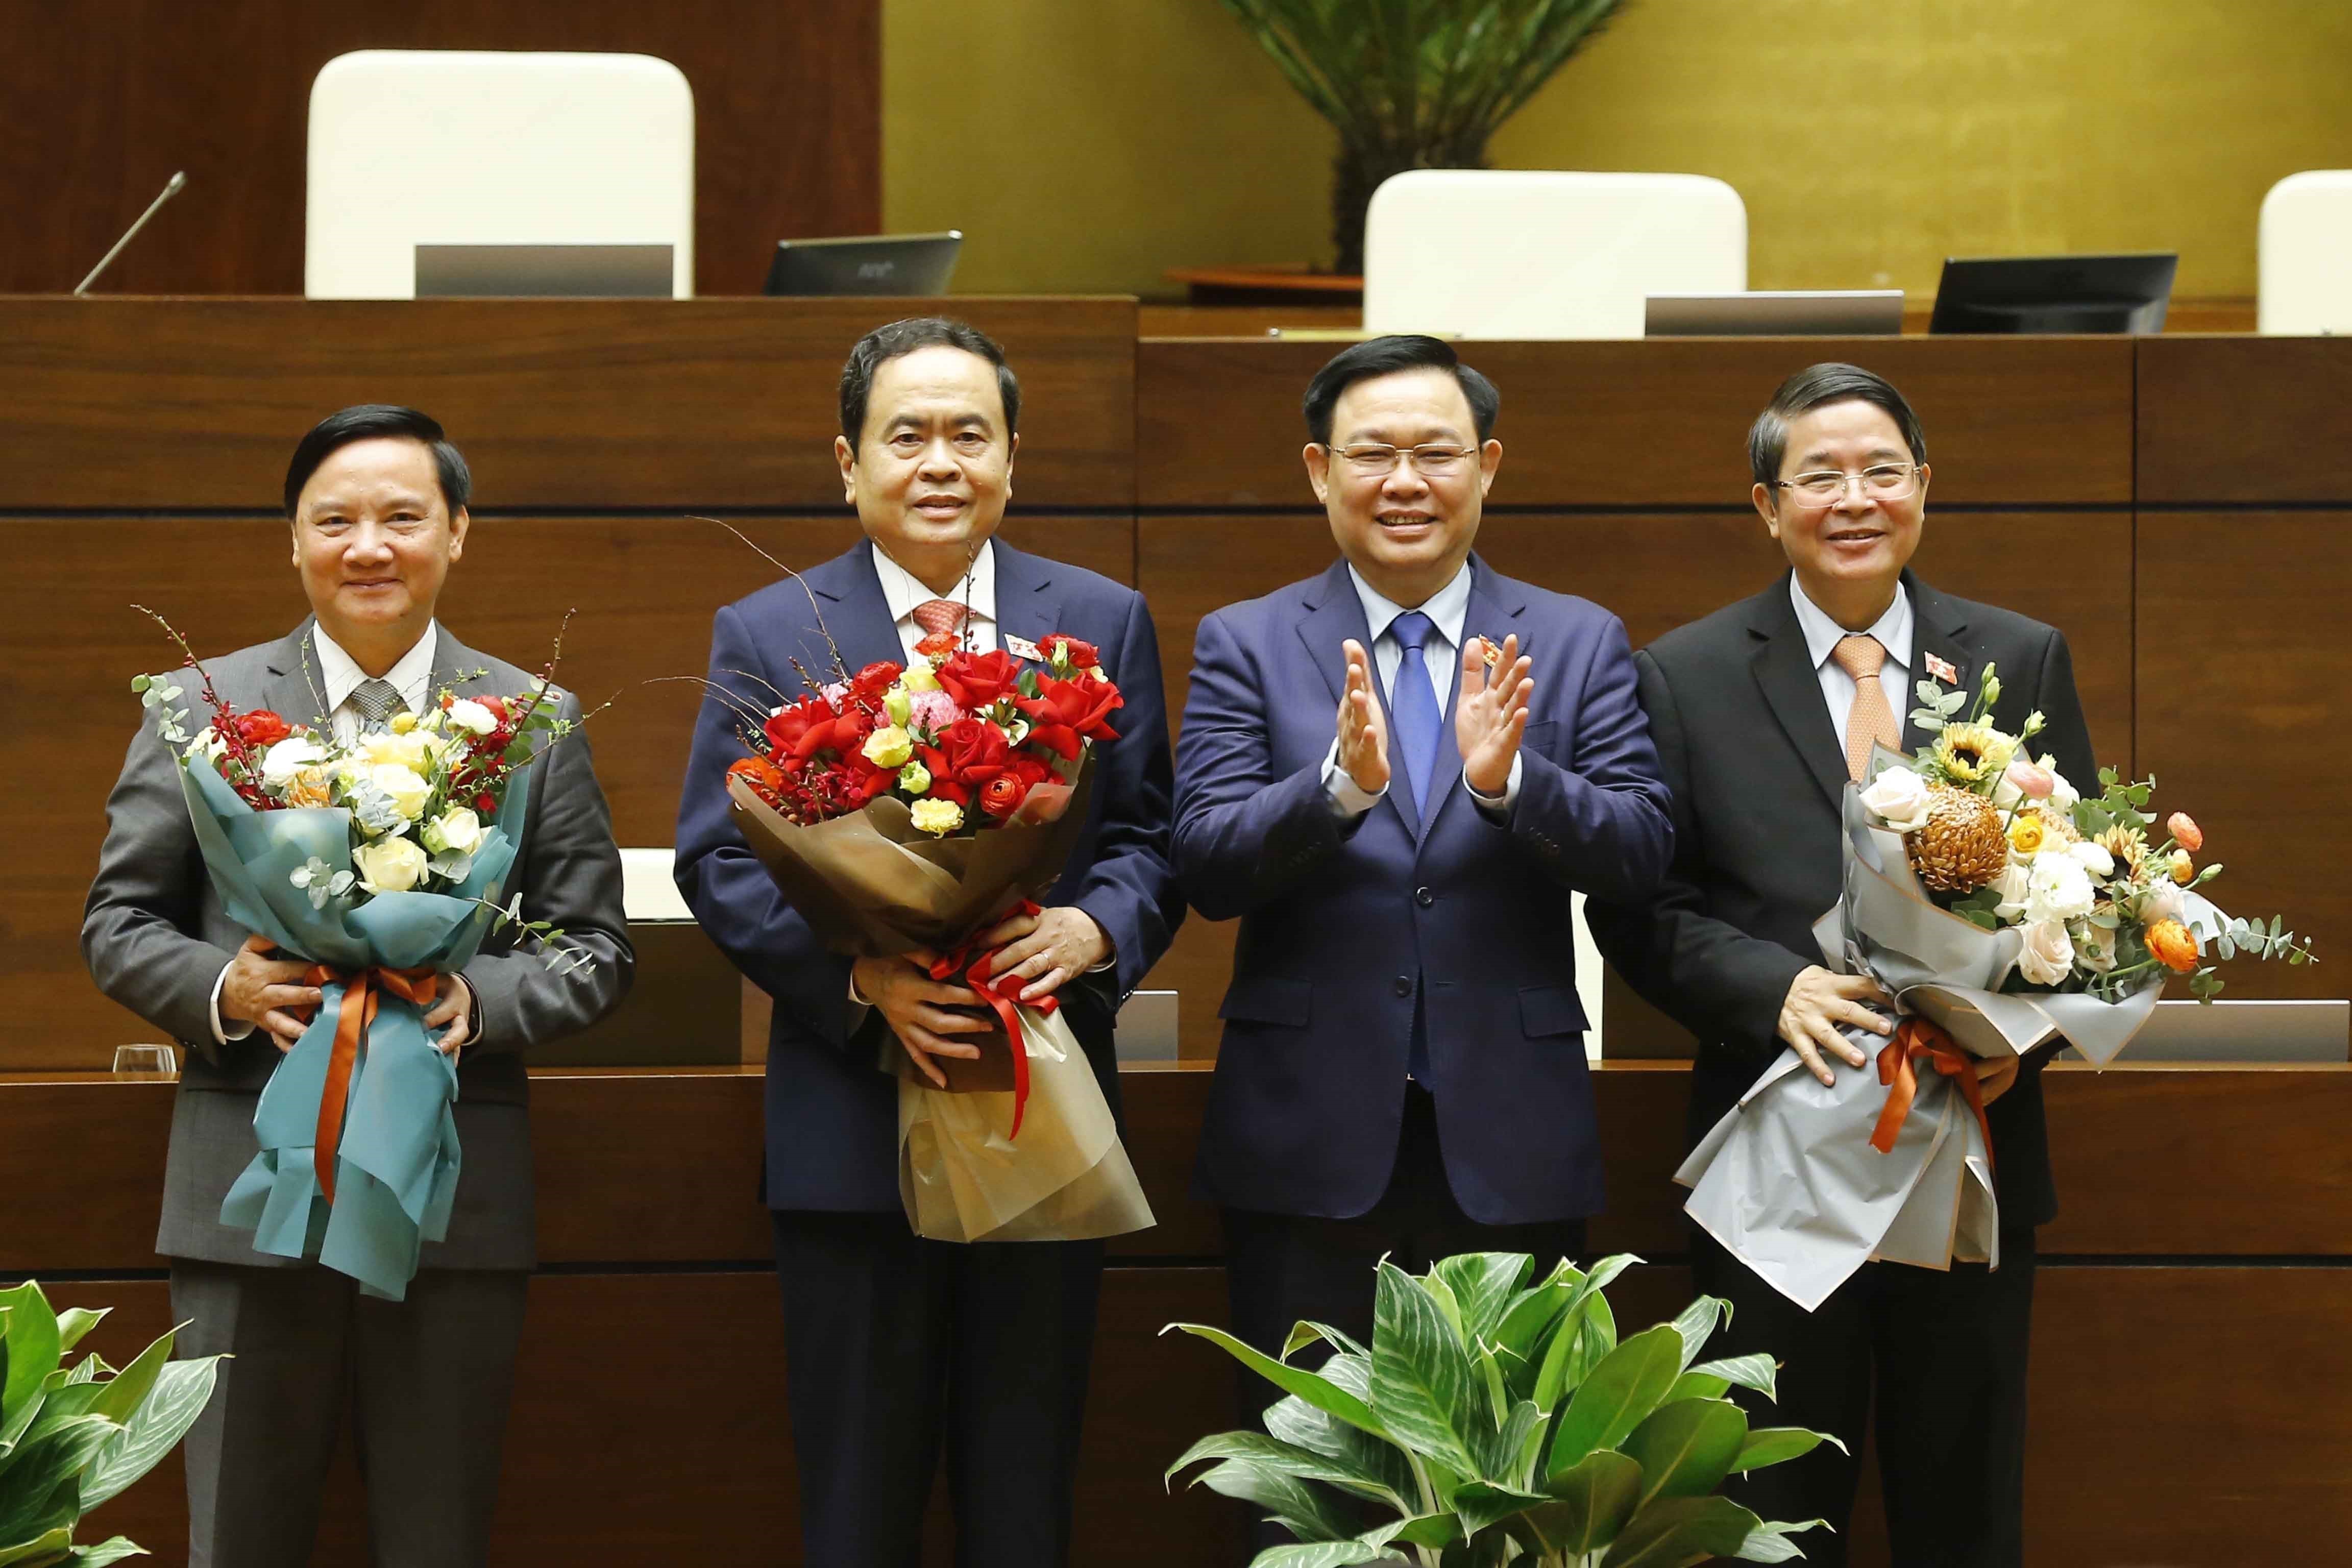 Chủ tịch Quốc hội Vương Đình Huệ tặng hoa chúc mừng các Phó Chủ tịch Trần Thanh Mẫn, Nguyễn Khắc Định và Nguyễn Đức Hải. Ảnh: DOÃN TẤN 